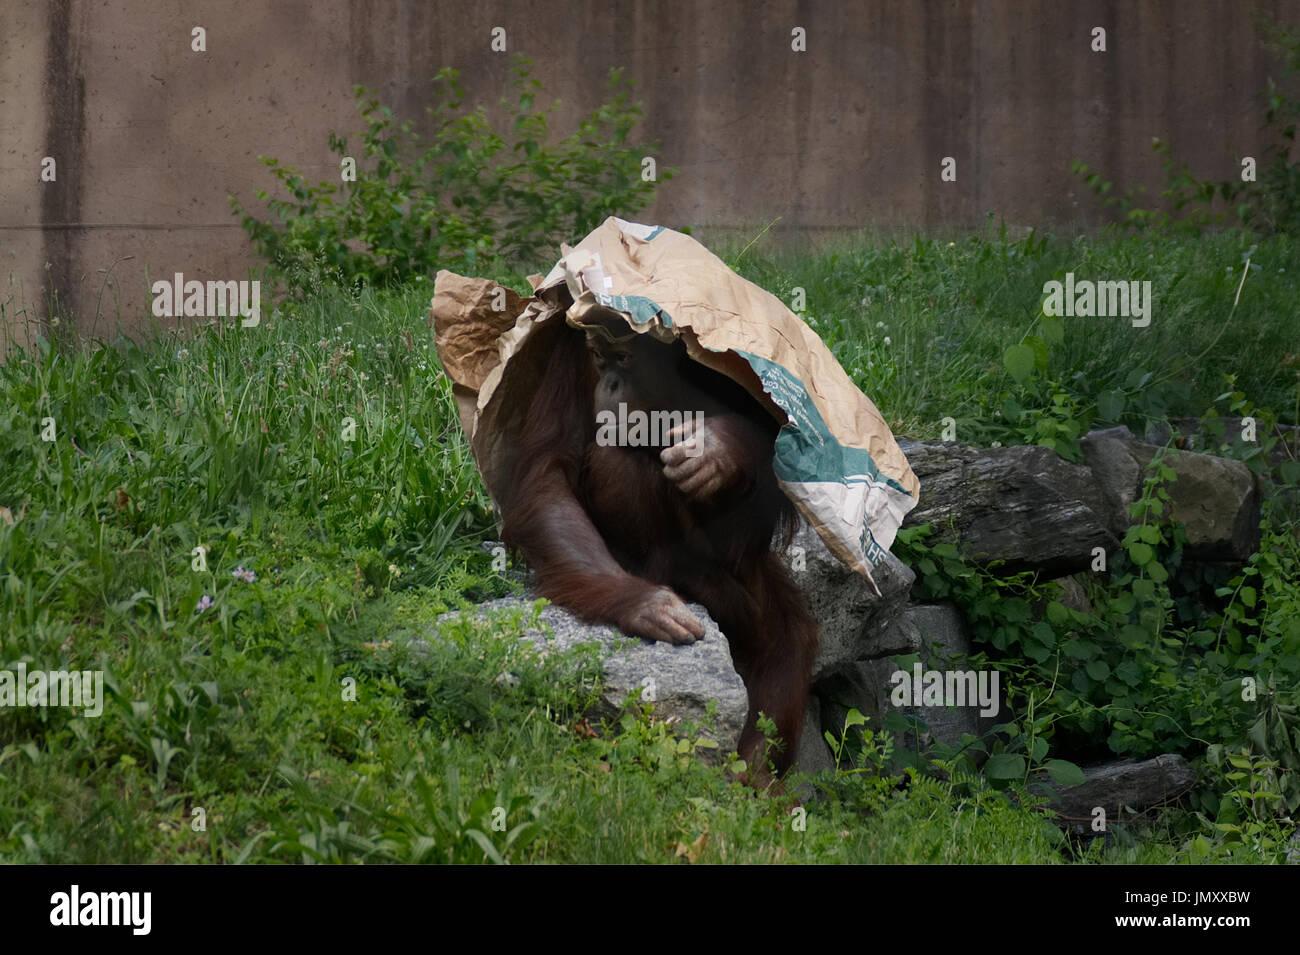 Ein Orang-utan sucht Schutz unter einem Paper Plane bei der primas Reserve des Philadelphia Zoo, in Philadelphia, PA, am 26. Mai 2017. Stockfoto